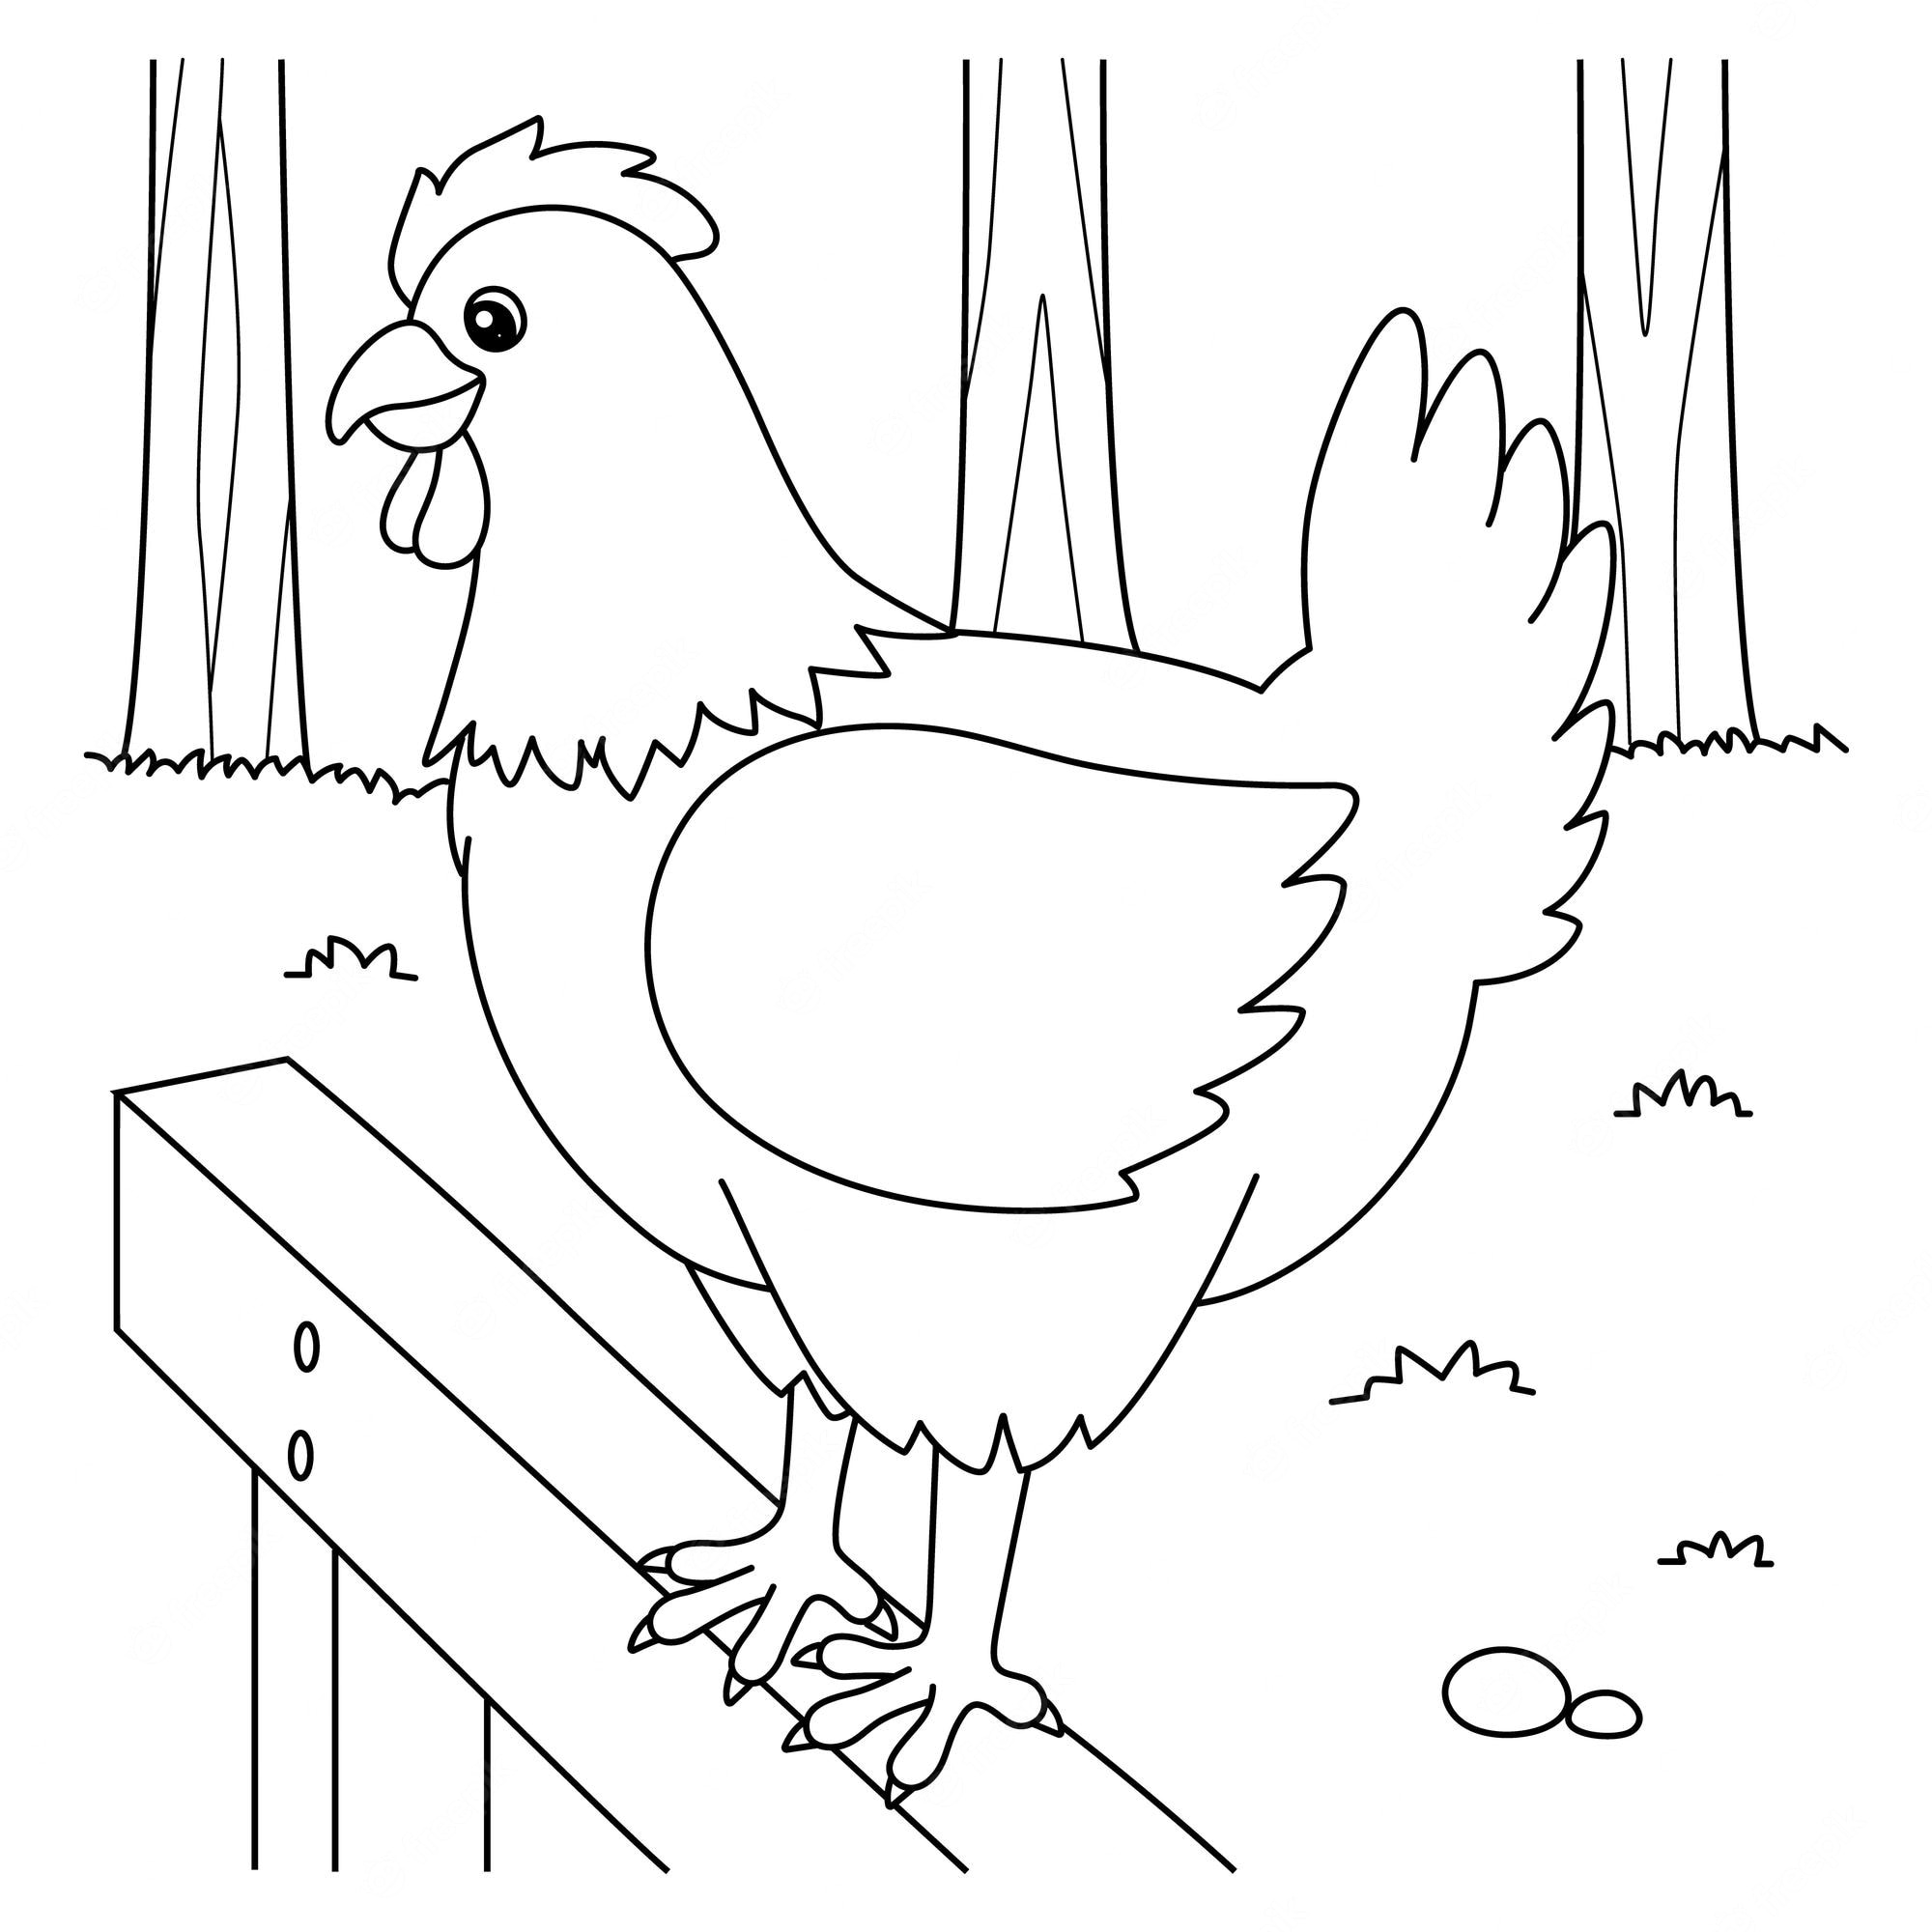 Раскраска Курица и цыплята, скачать и распечатать раскраску раздела Животные и их детеныши